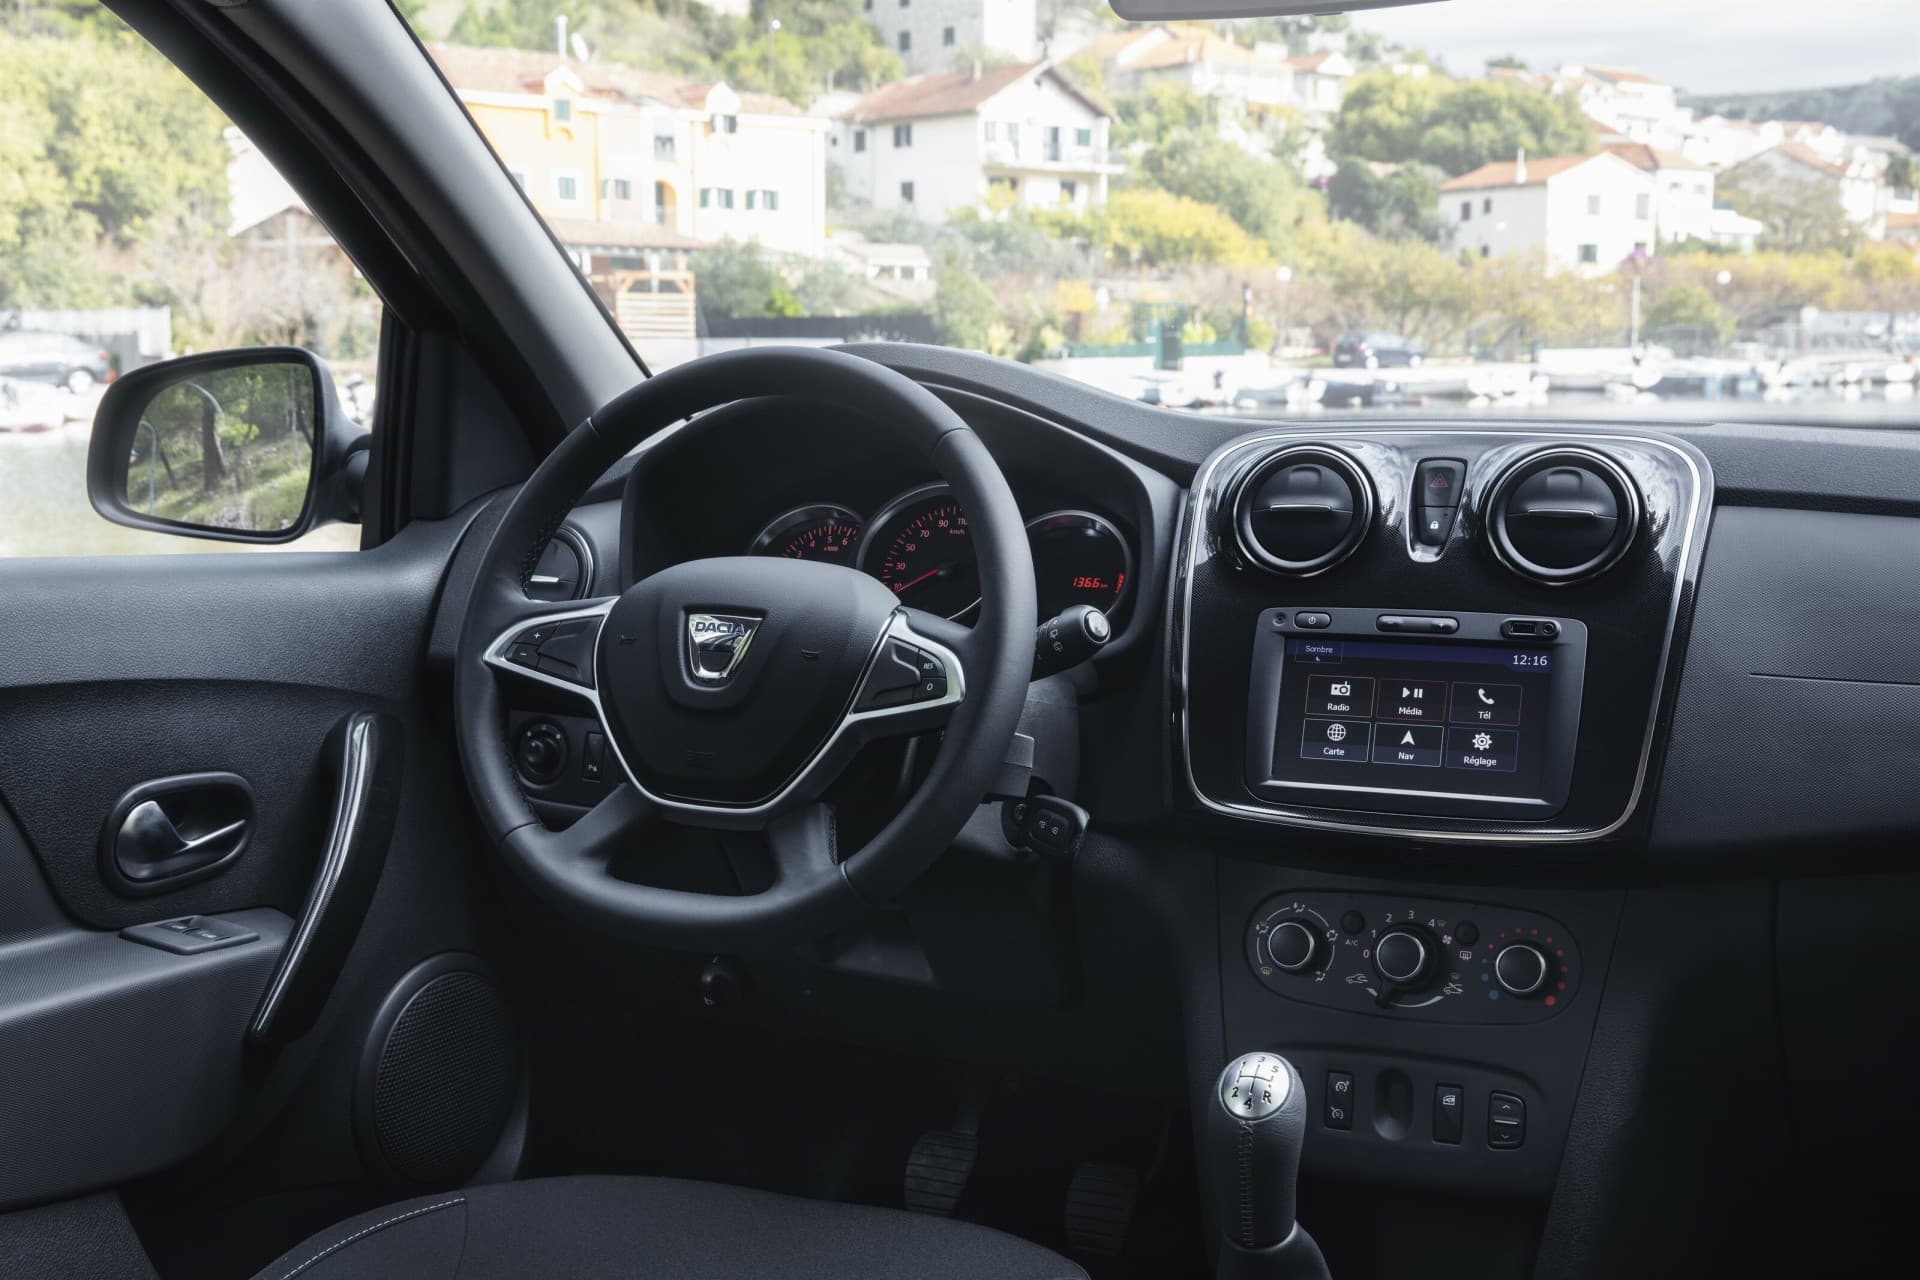 Efecto Dacia Coche Low Cost Sandero Interior